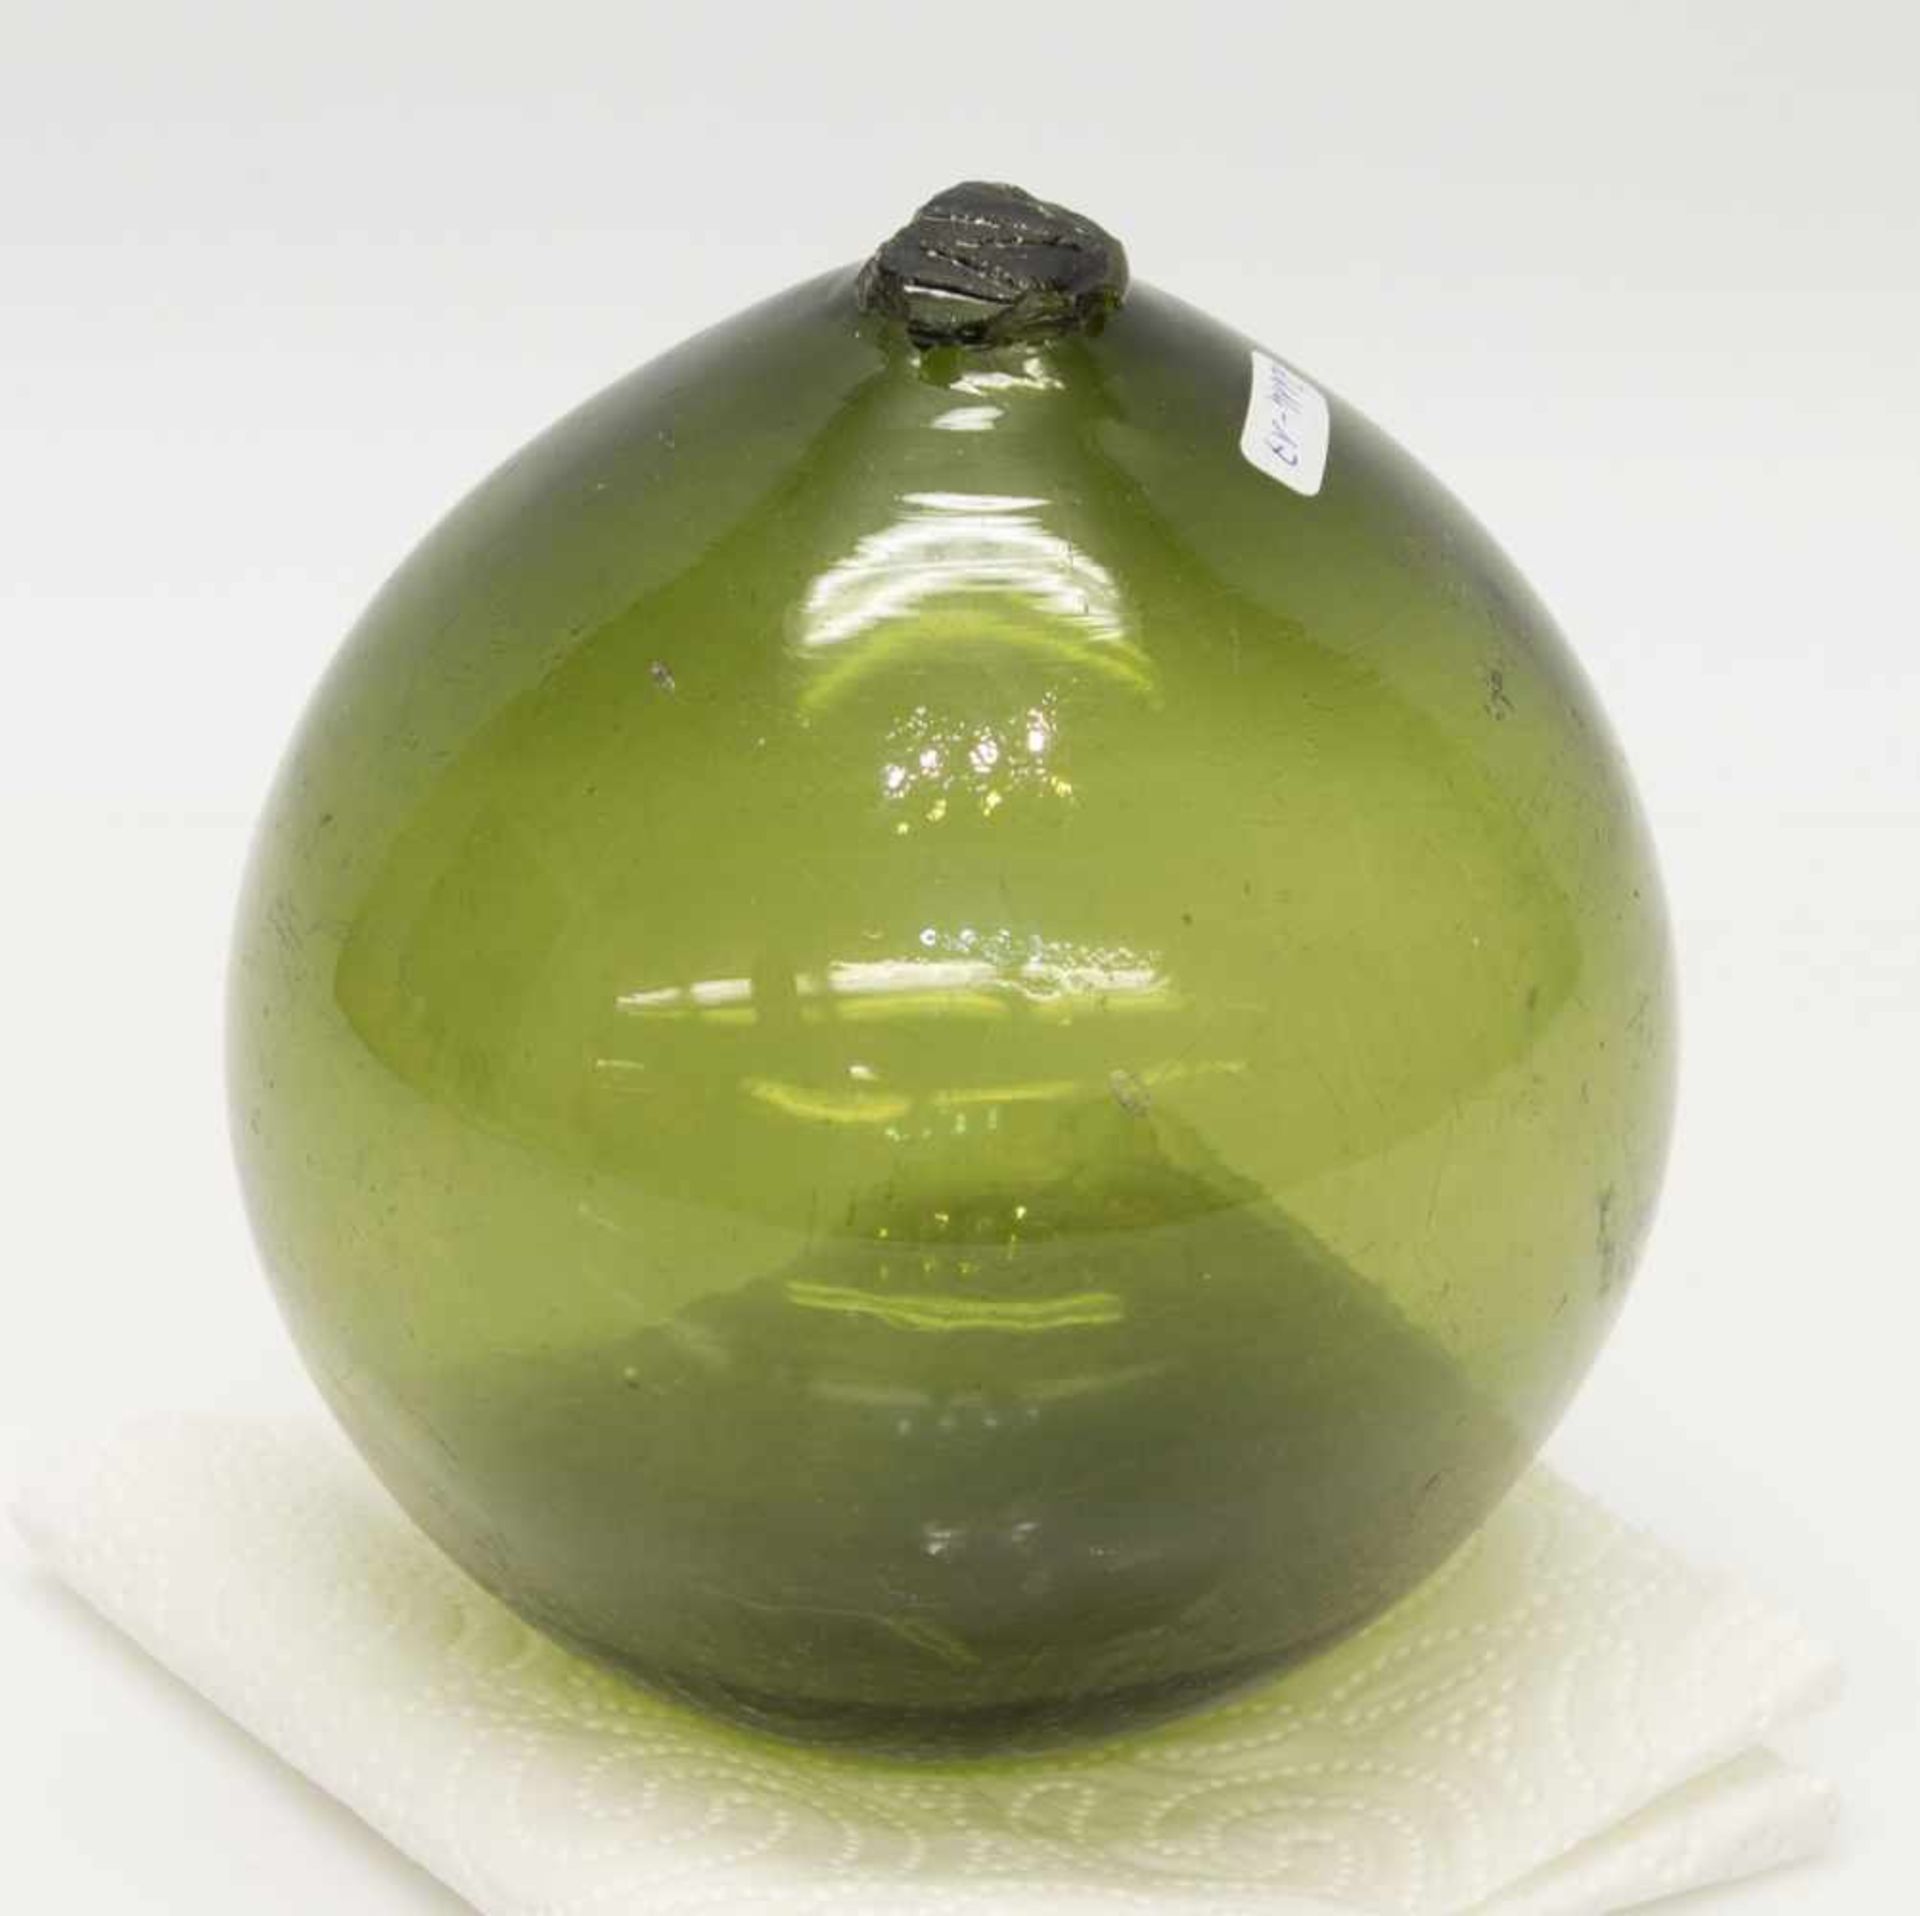 NetzkugelMecklenburger Waldglas 19. Jh., Grünglas in Form geblasen, mit unles. Siegel verschloßen,